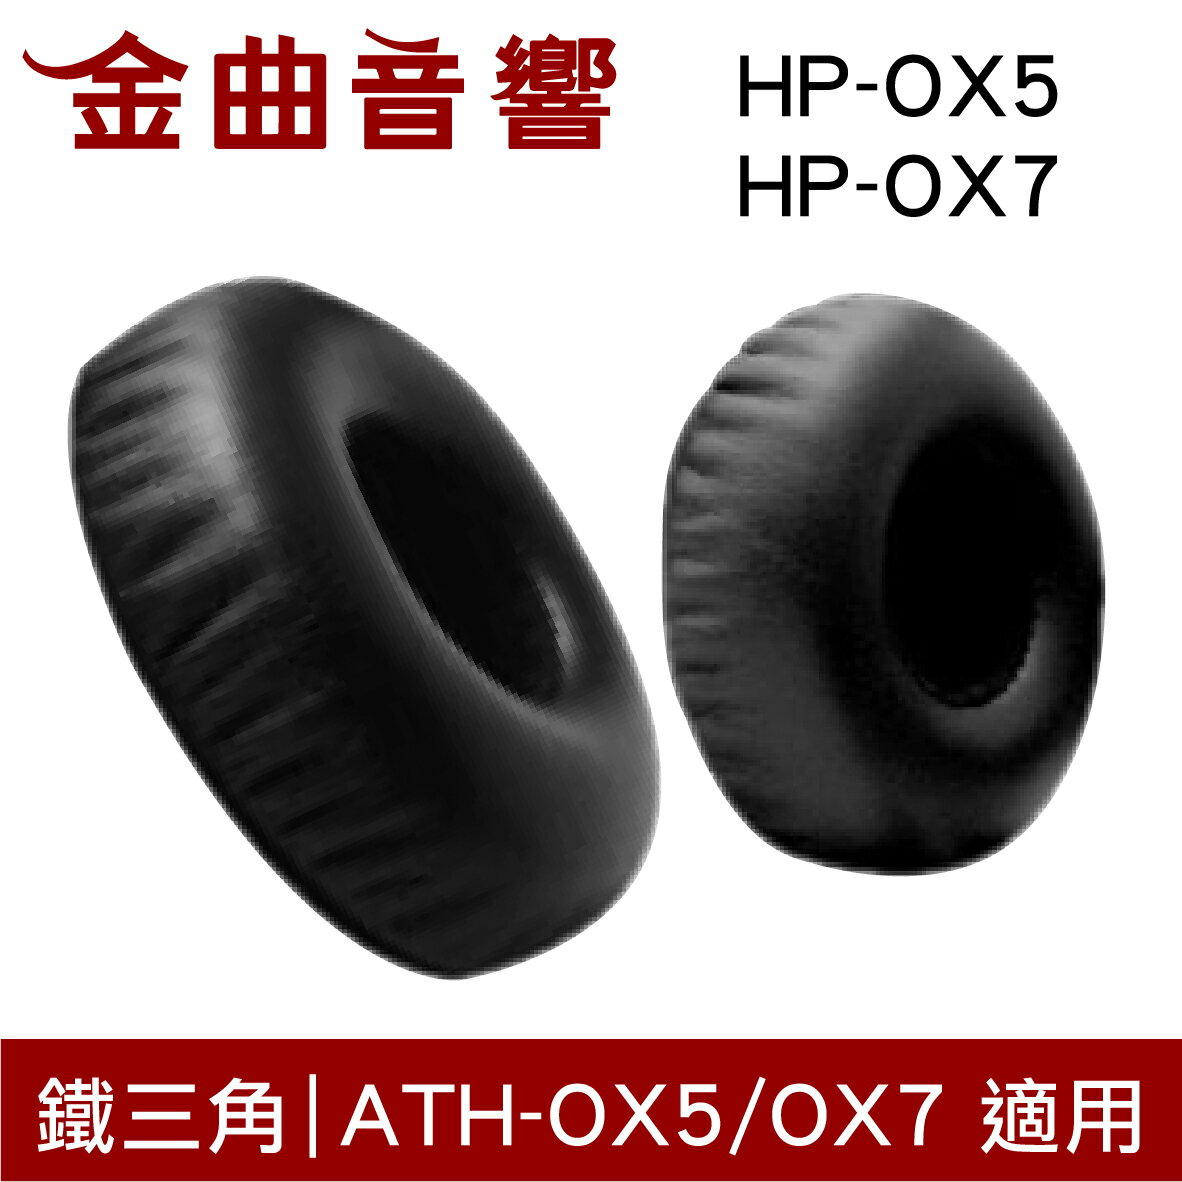 鐵三角 HP-OX5 HP-OX7 替換耳罩 一對 ATH-OX5 ATH-OX7 適用 | 金曲音響